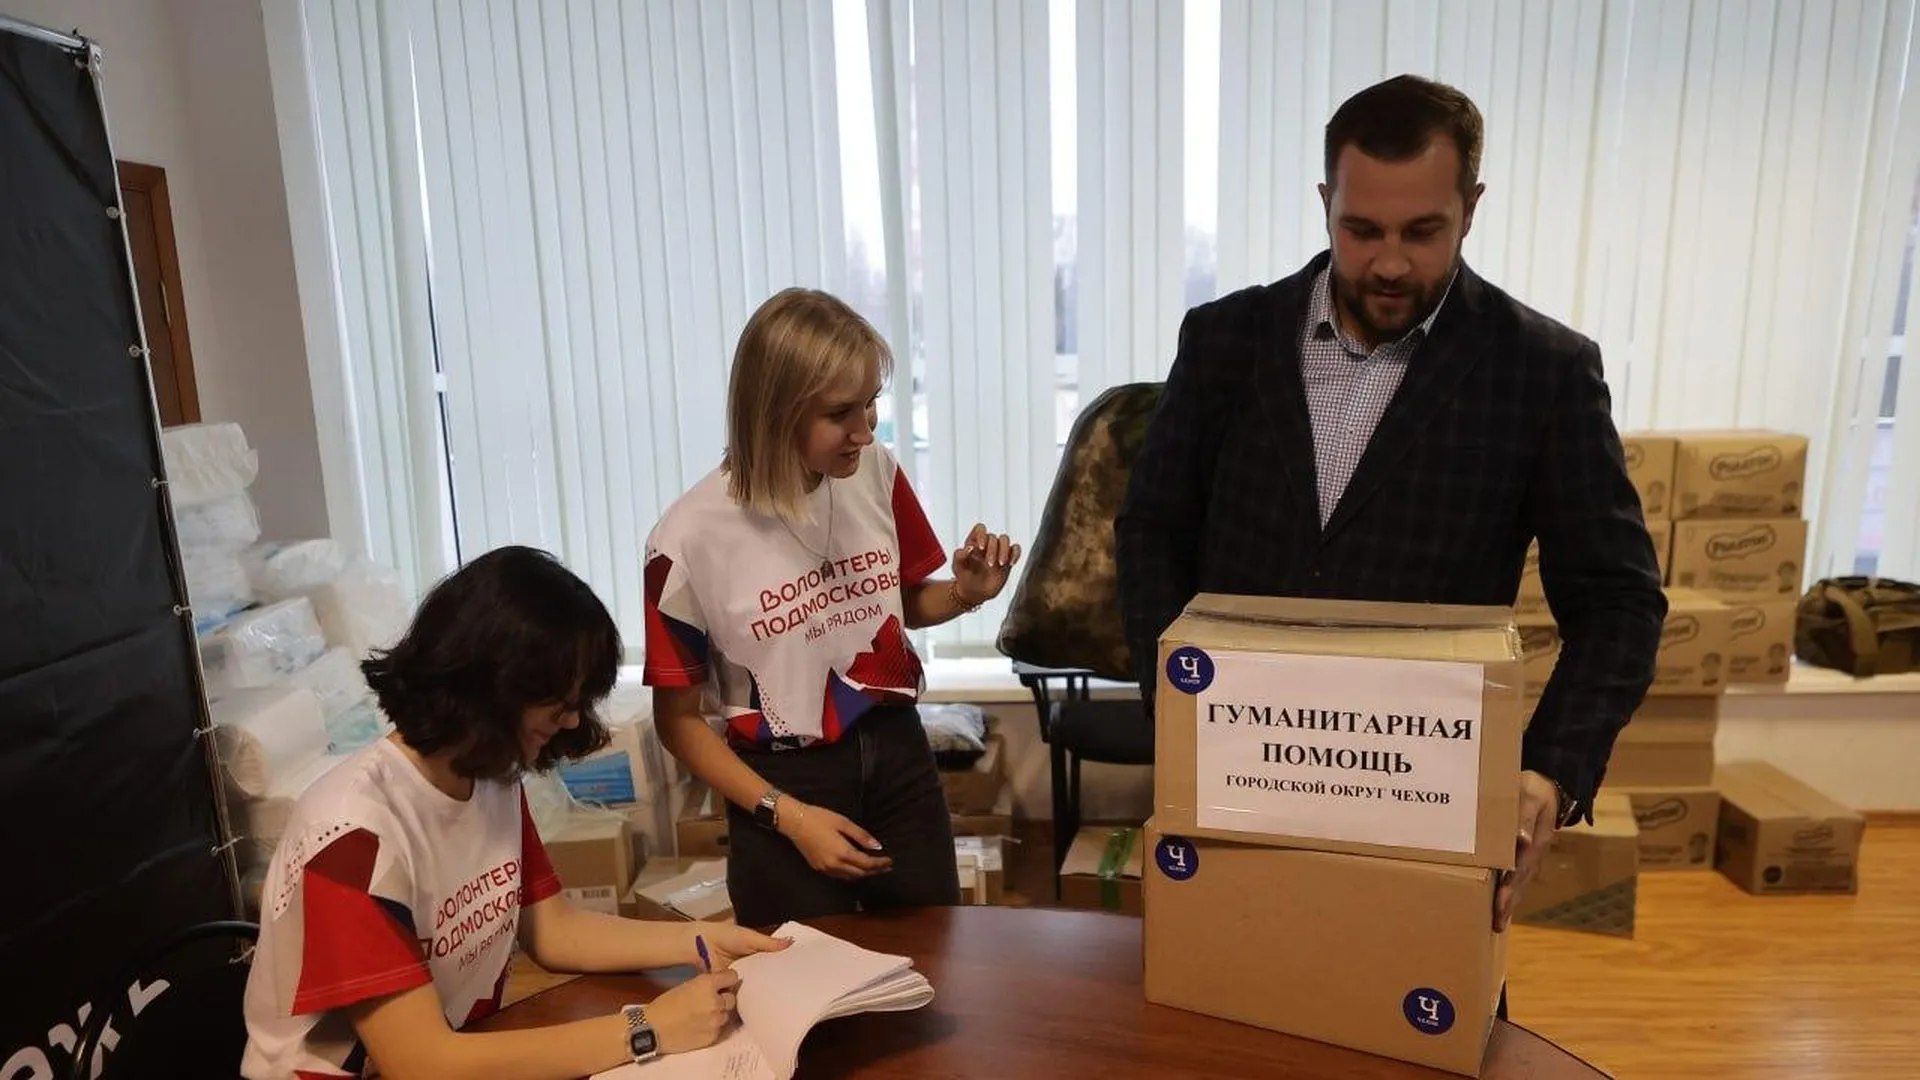 Михаил Собакин передал помощь в Центр поддержки бойцов в Чехове